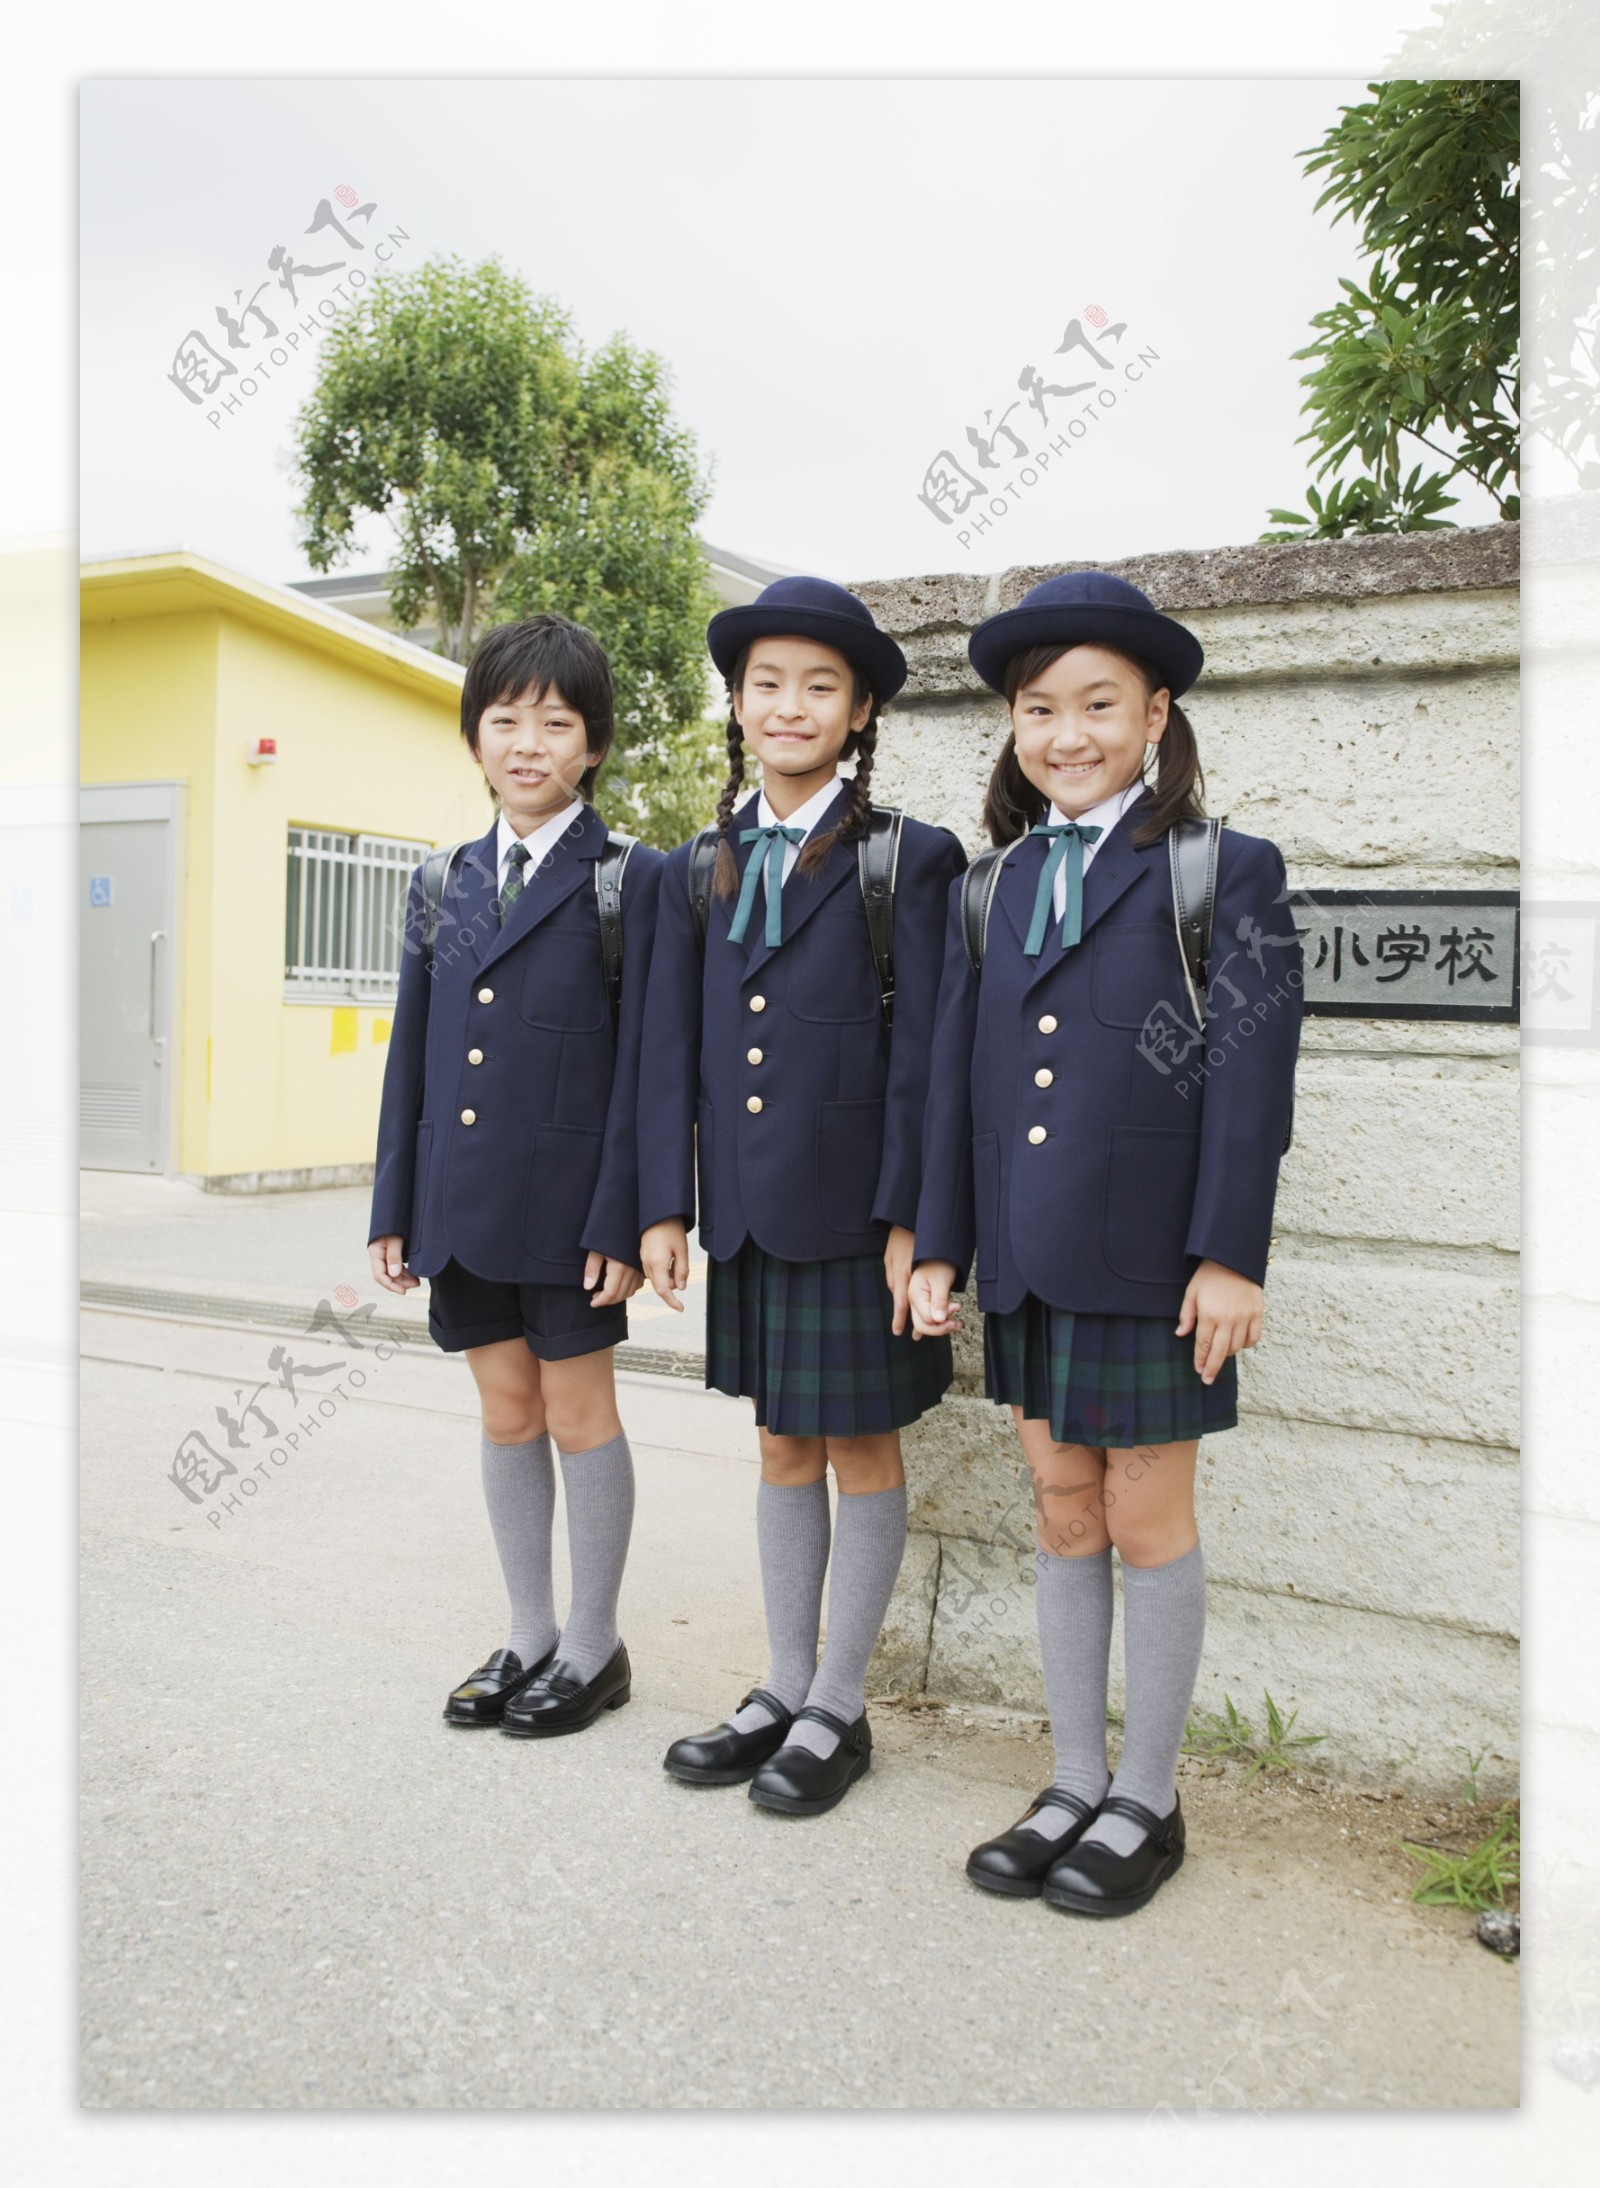 穿校服的小学生图片